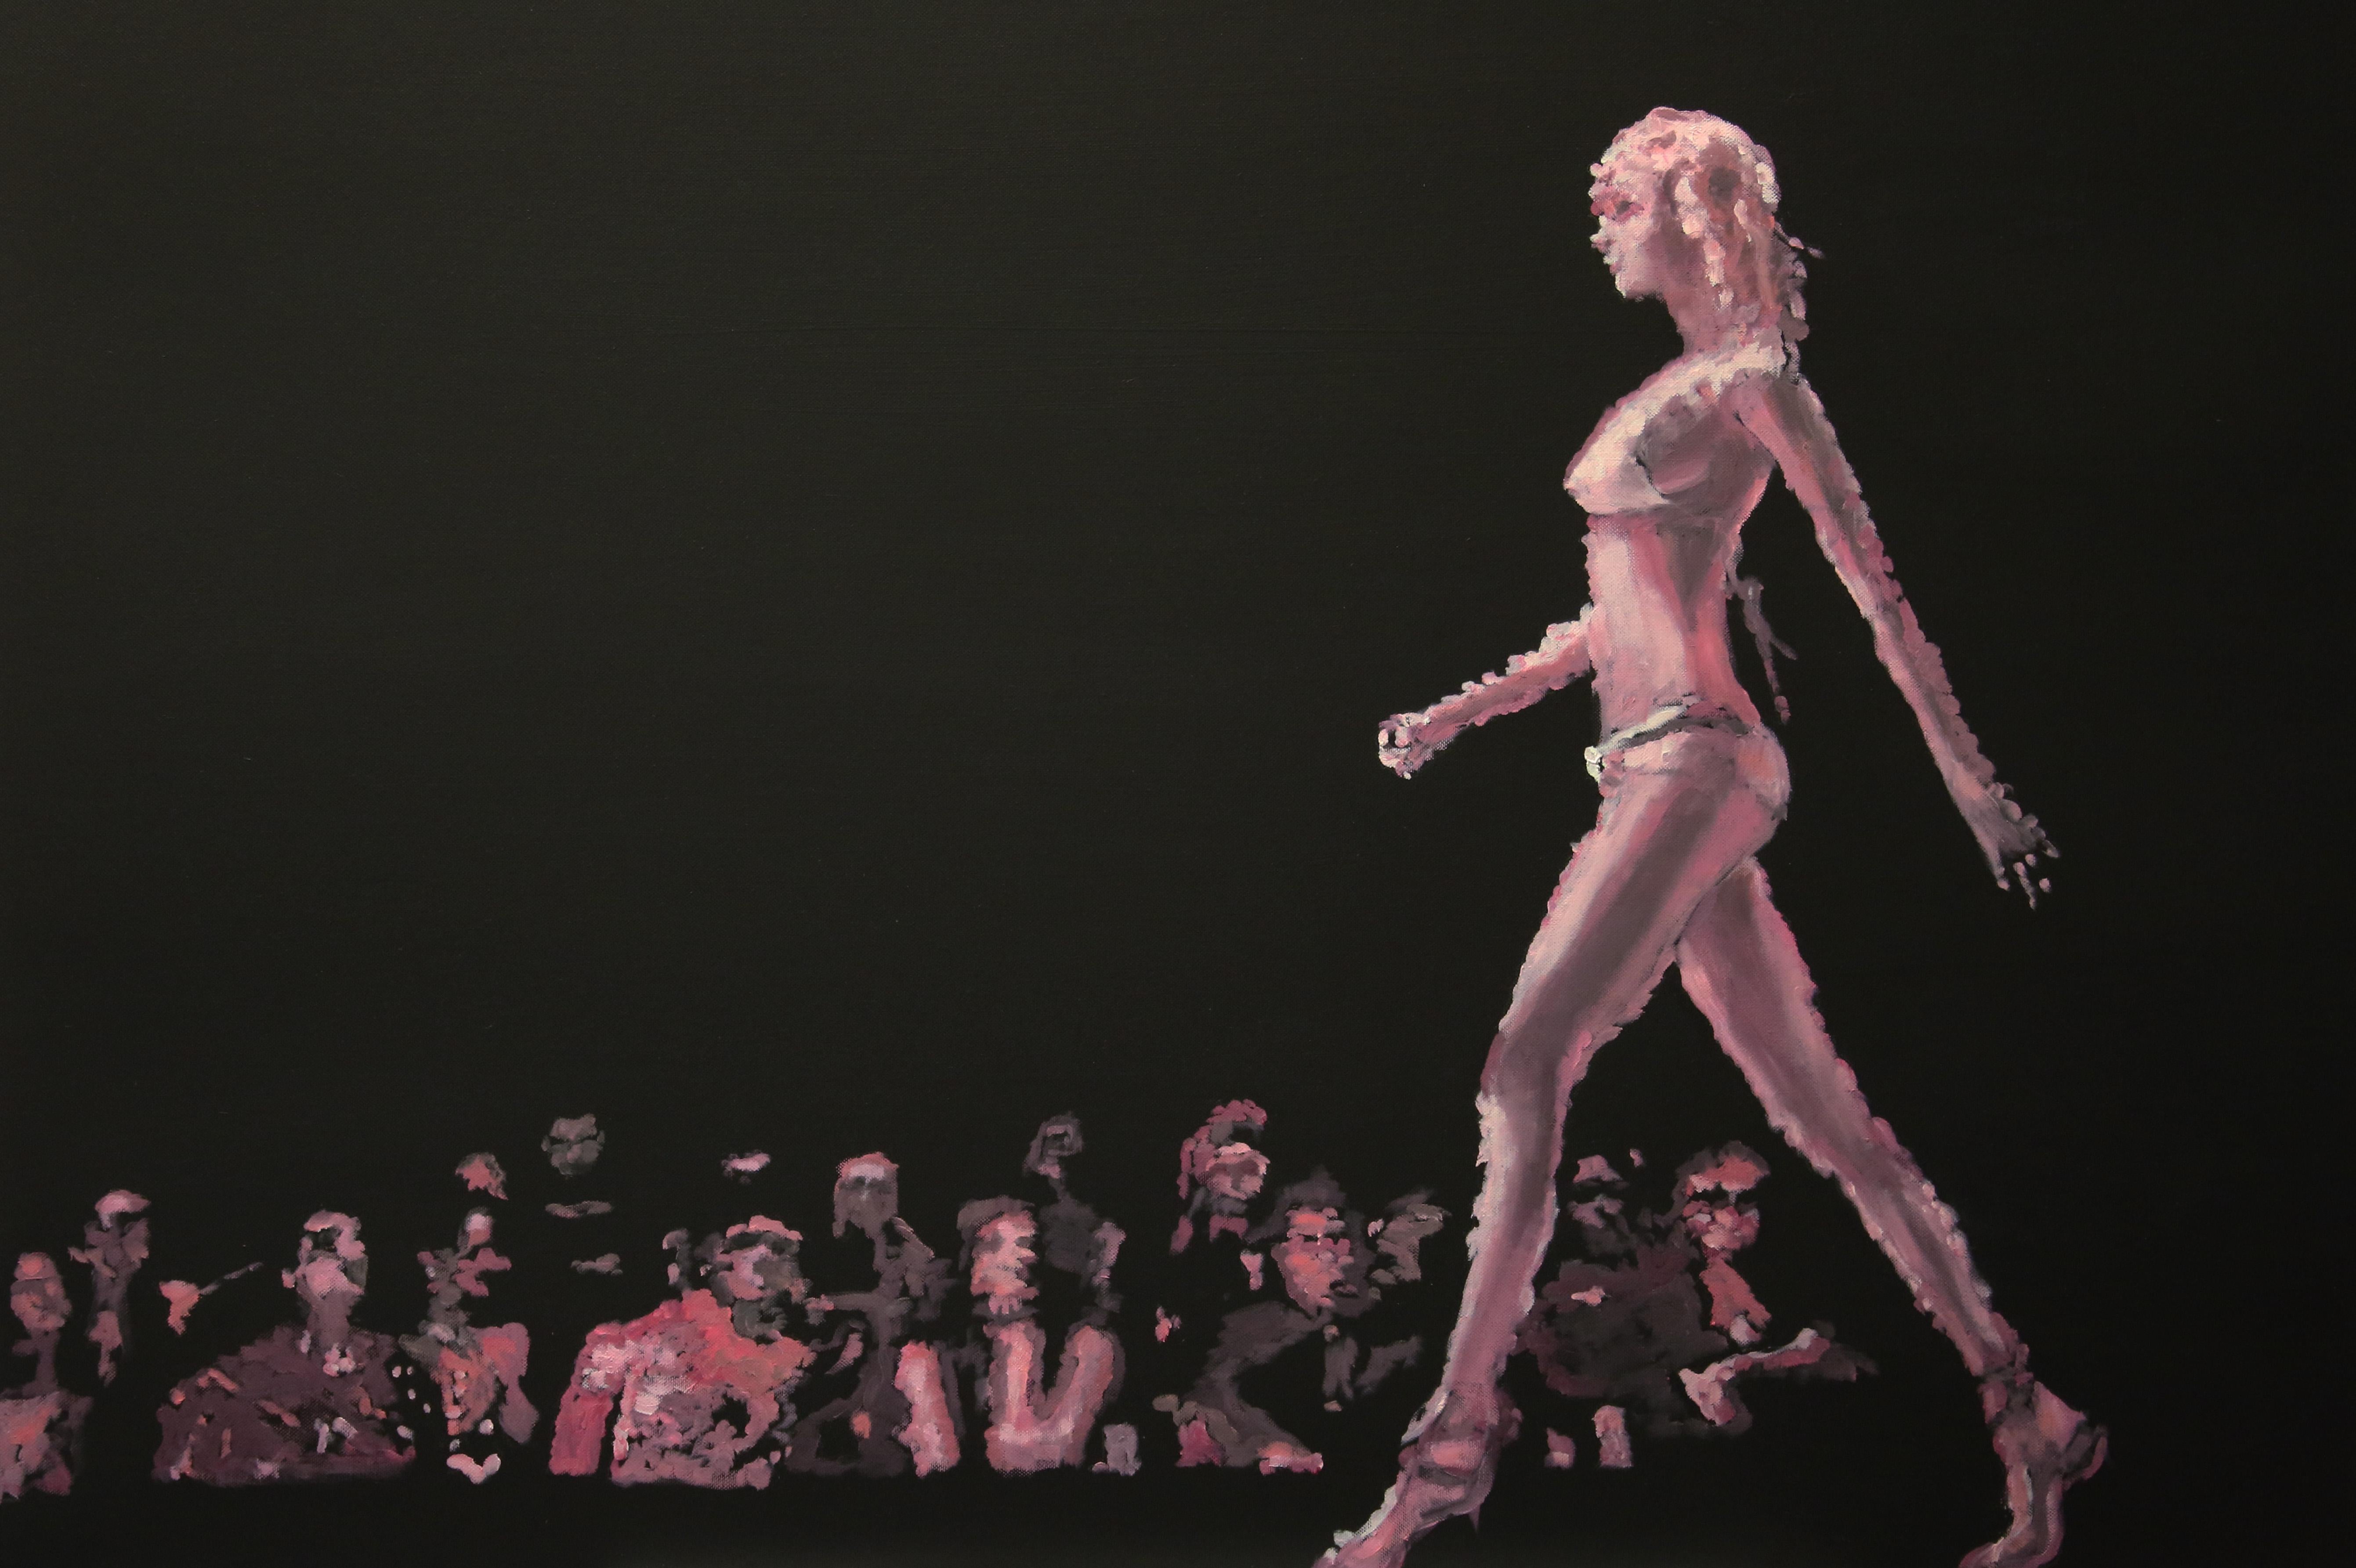 Michael Pröpper Figurative Painting – Fast Girl - zeitgenössisches figuratives Laufsteg-Gemälde in Öl auf Leinwand